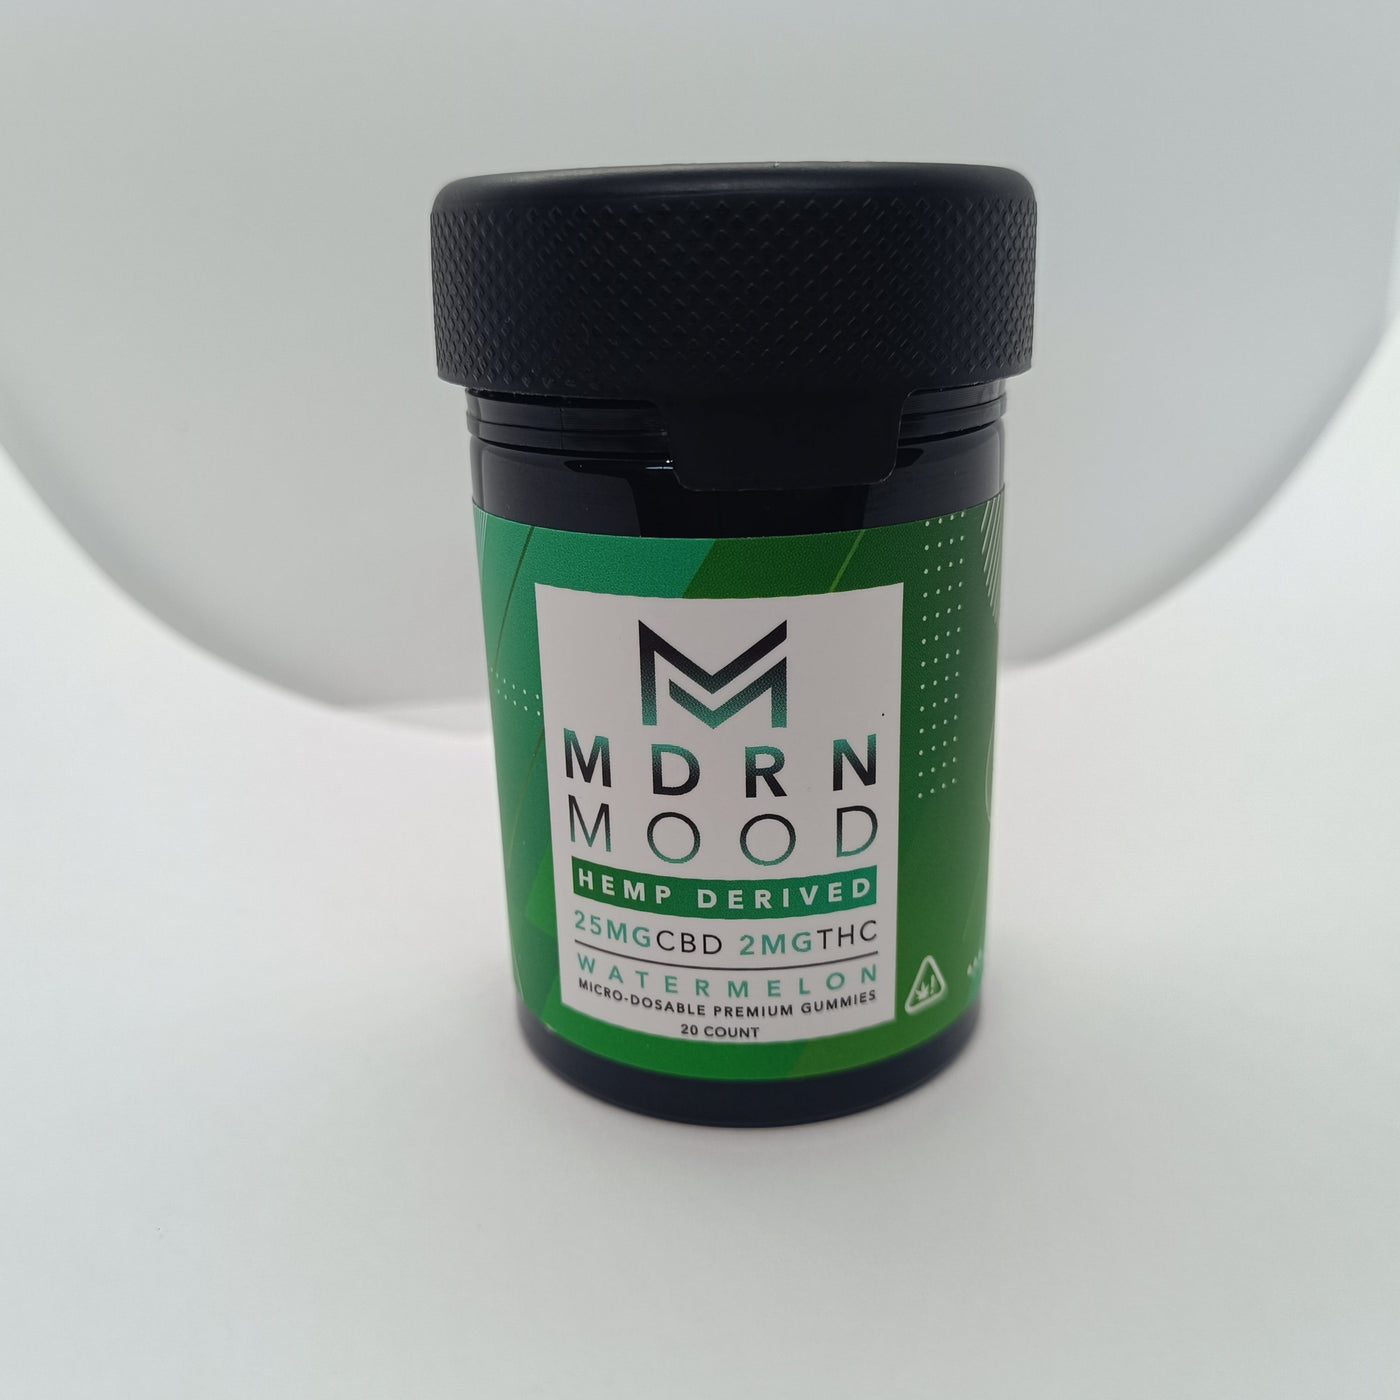 MDRN MOOD - 20 GUMMIES - 25mg CBD/2mg THC - WATERMELON